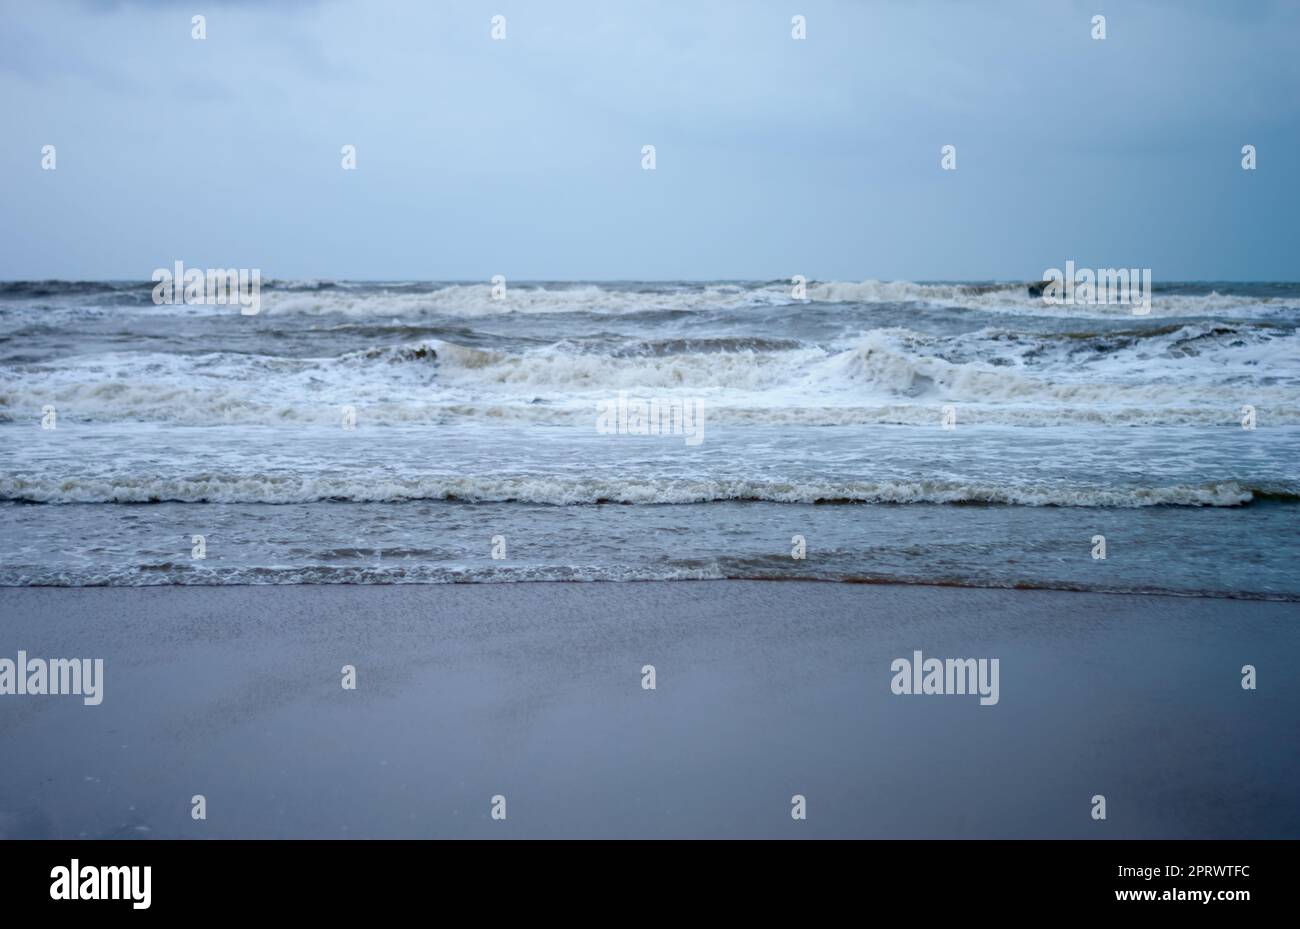 Vagues de mer écrasant au fond de l'océan. Contexte de la nature. Concentrez-vous sur le premier plan. Puri, Odisha, Inde Banque D'Images